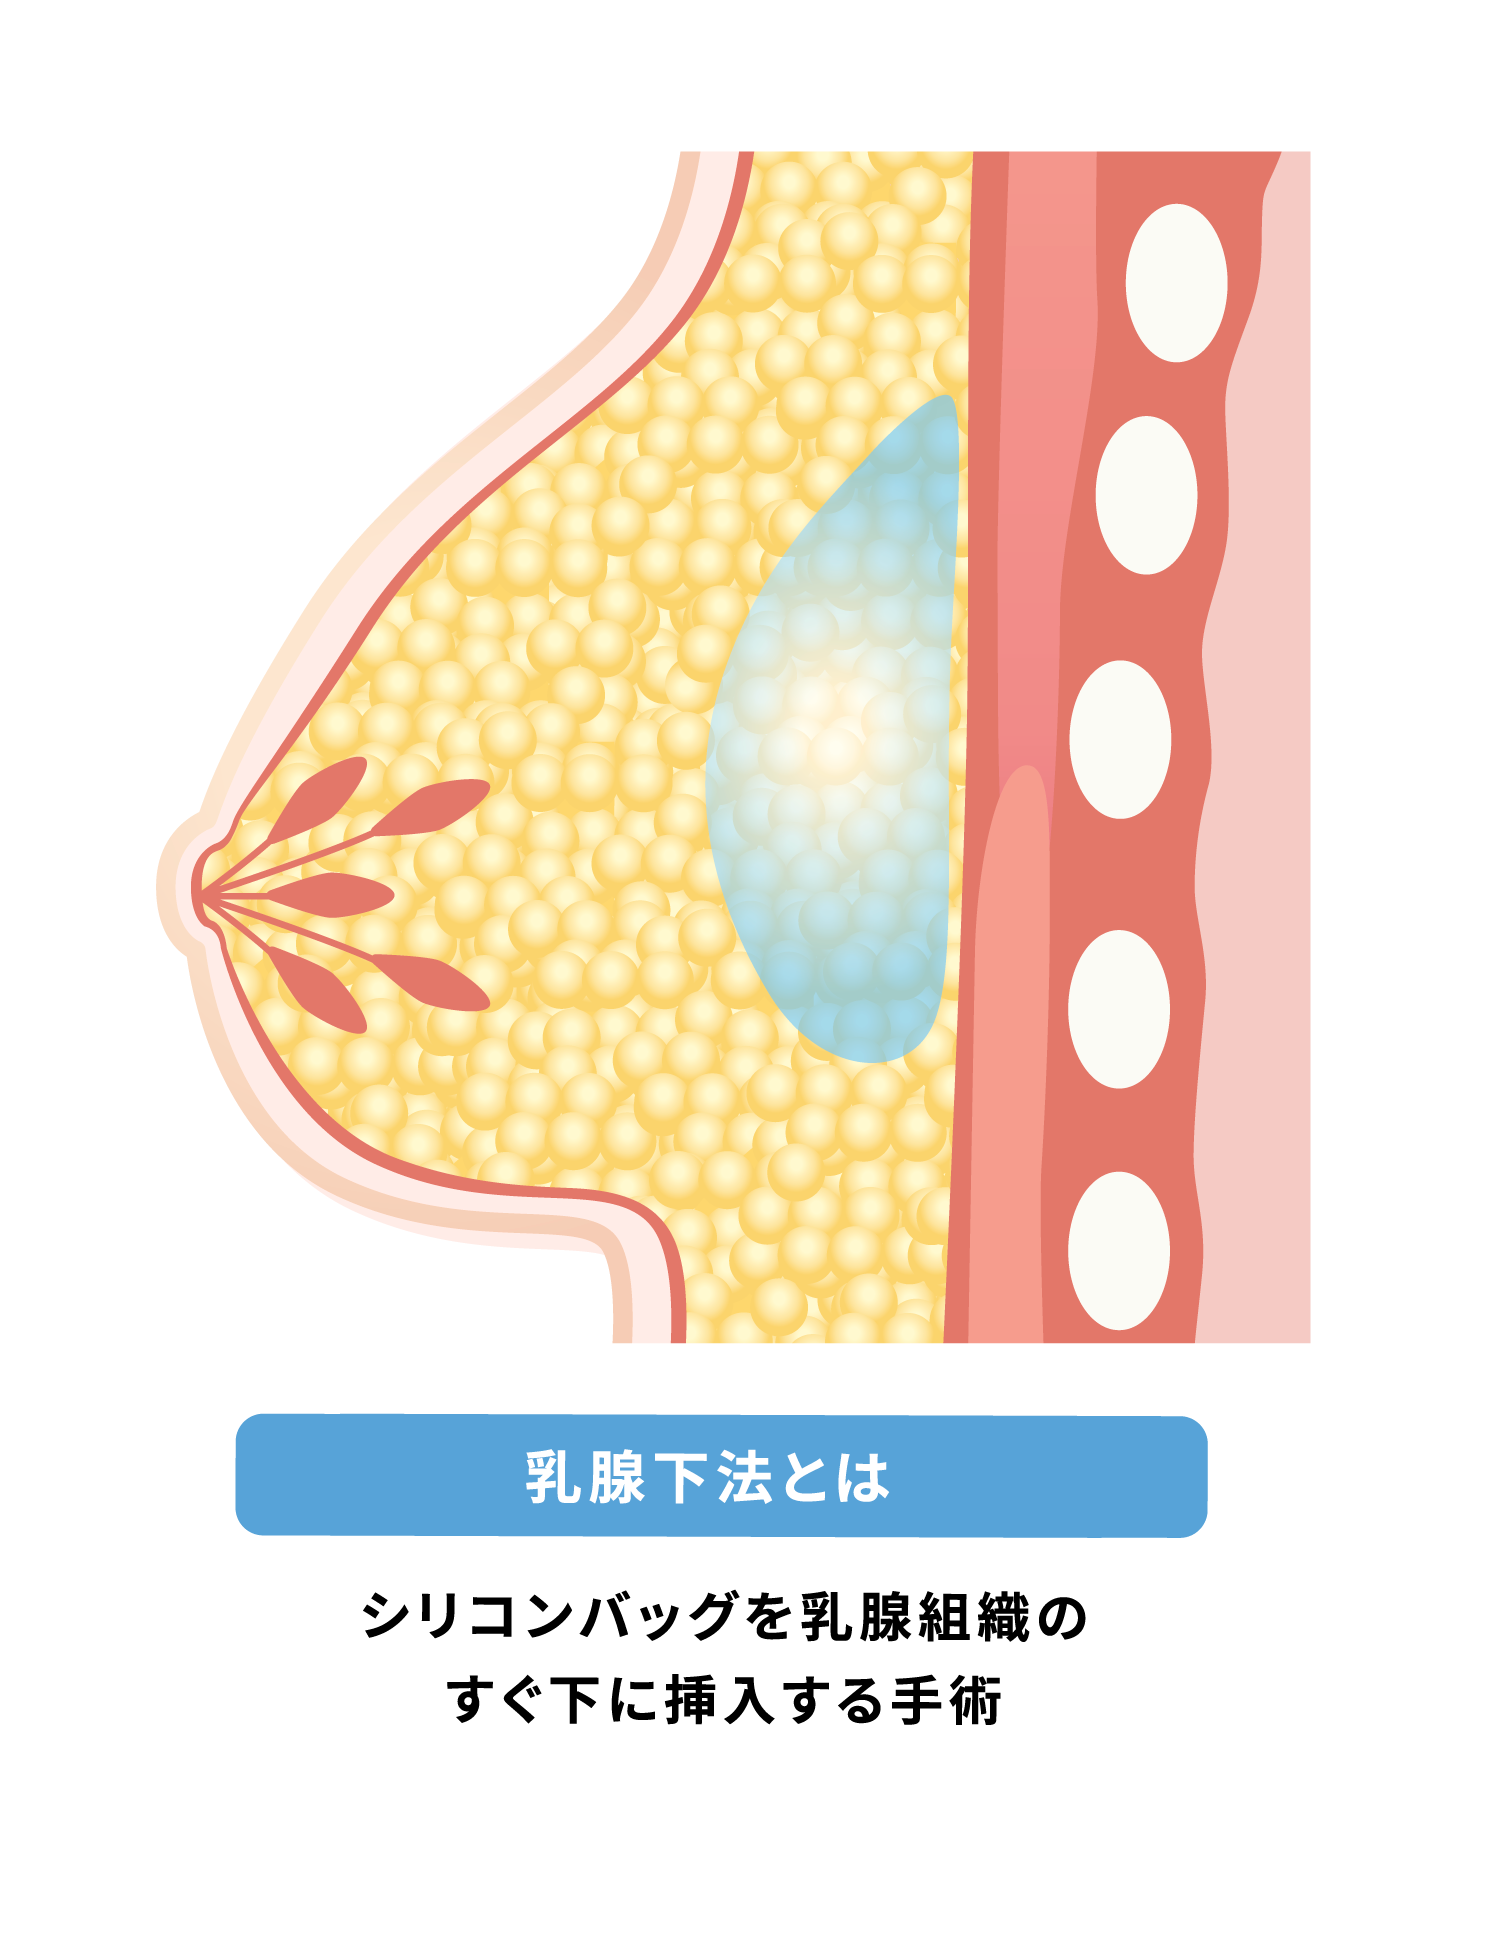 乳腺下法~リシコン豊胸